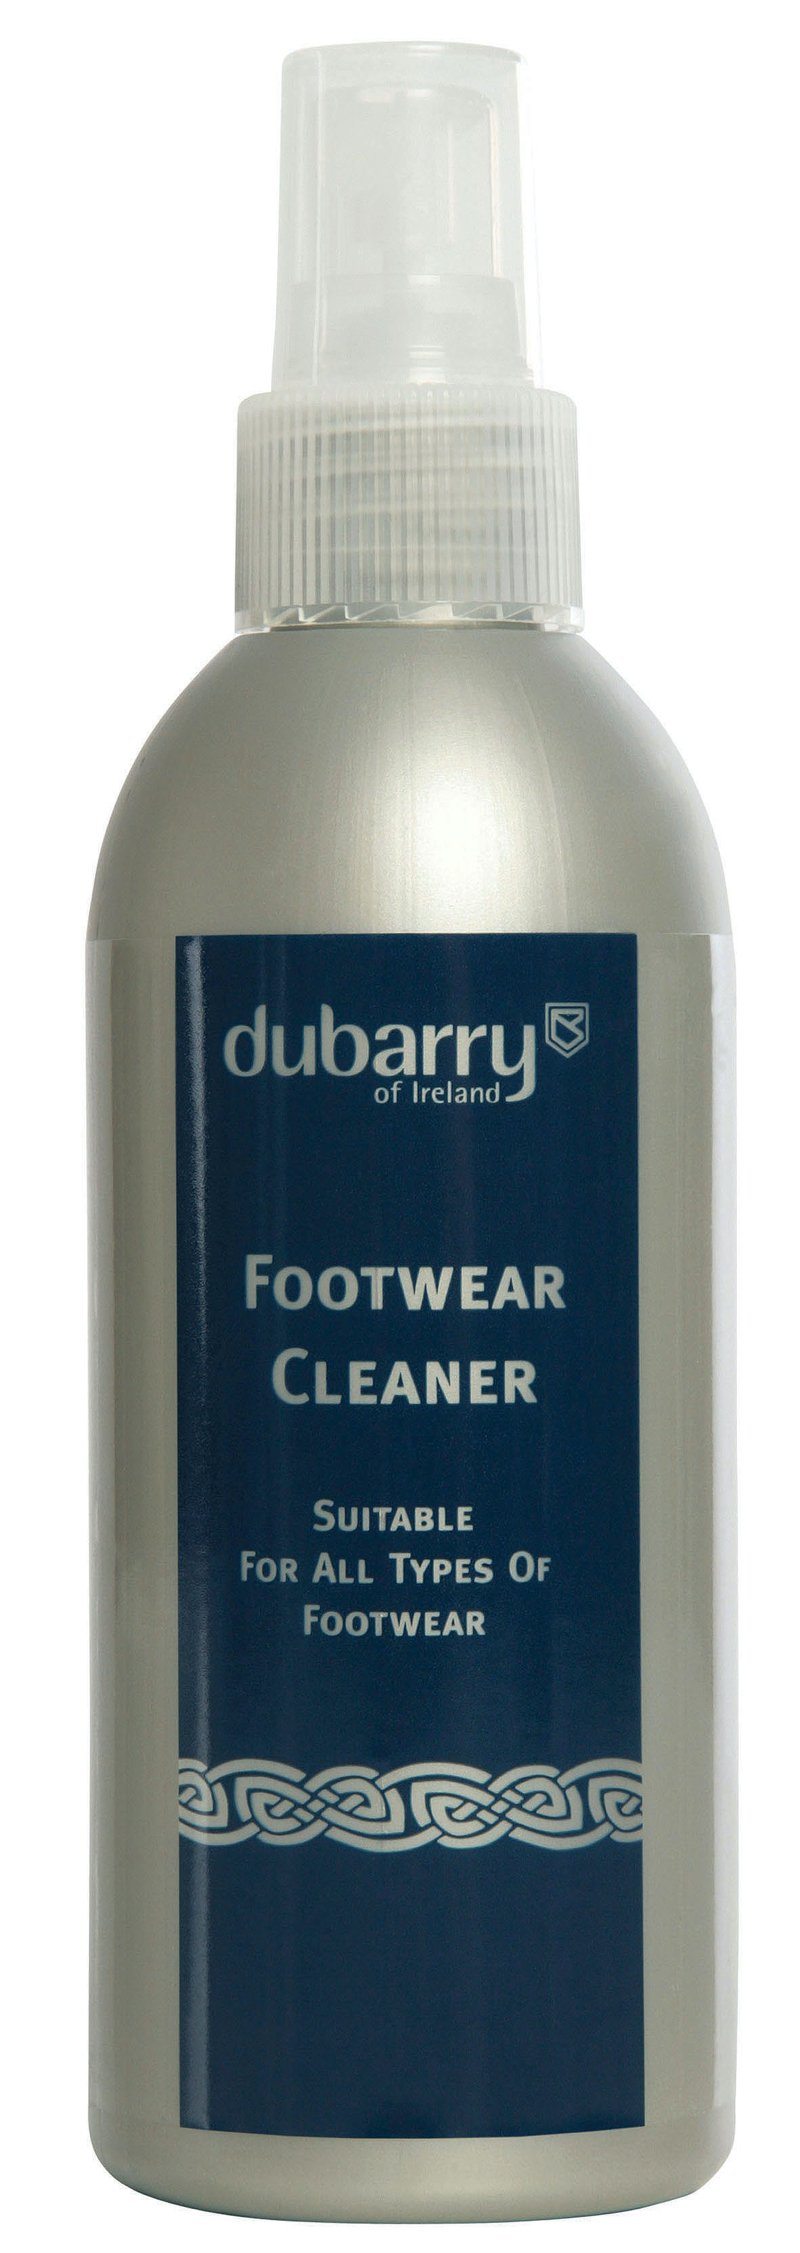 Billede af Footwear Cleaner rensemiddel til fodtøj